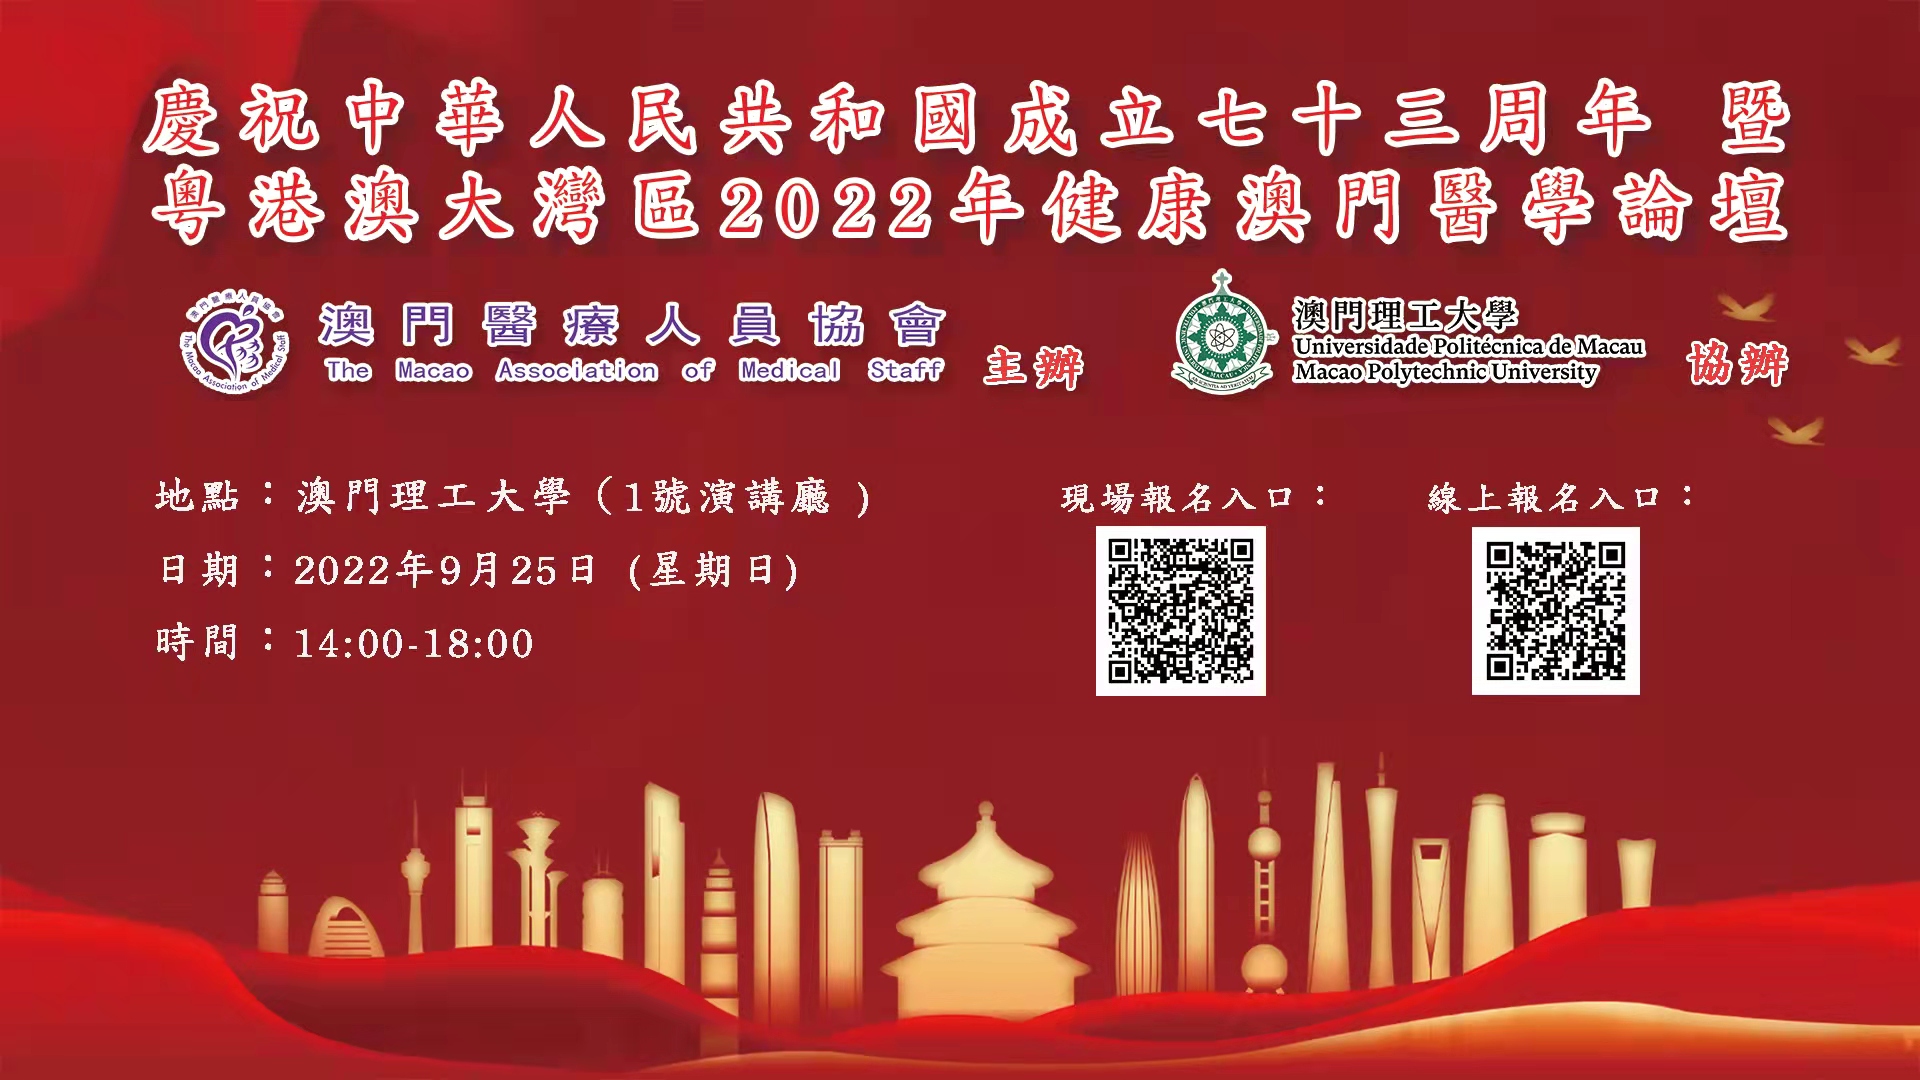 慶祝中華人民共和國成立七十三周年 暨粵港澳大灣區2022年健康澳門醫學論壇